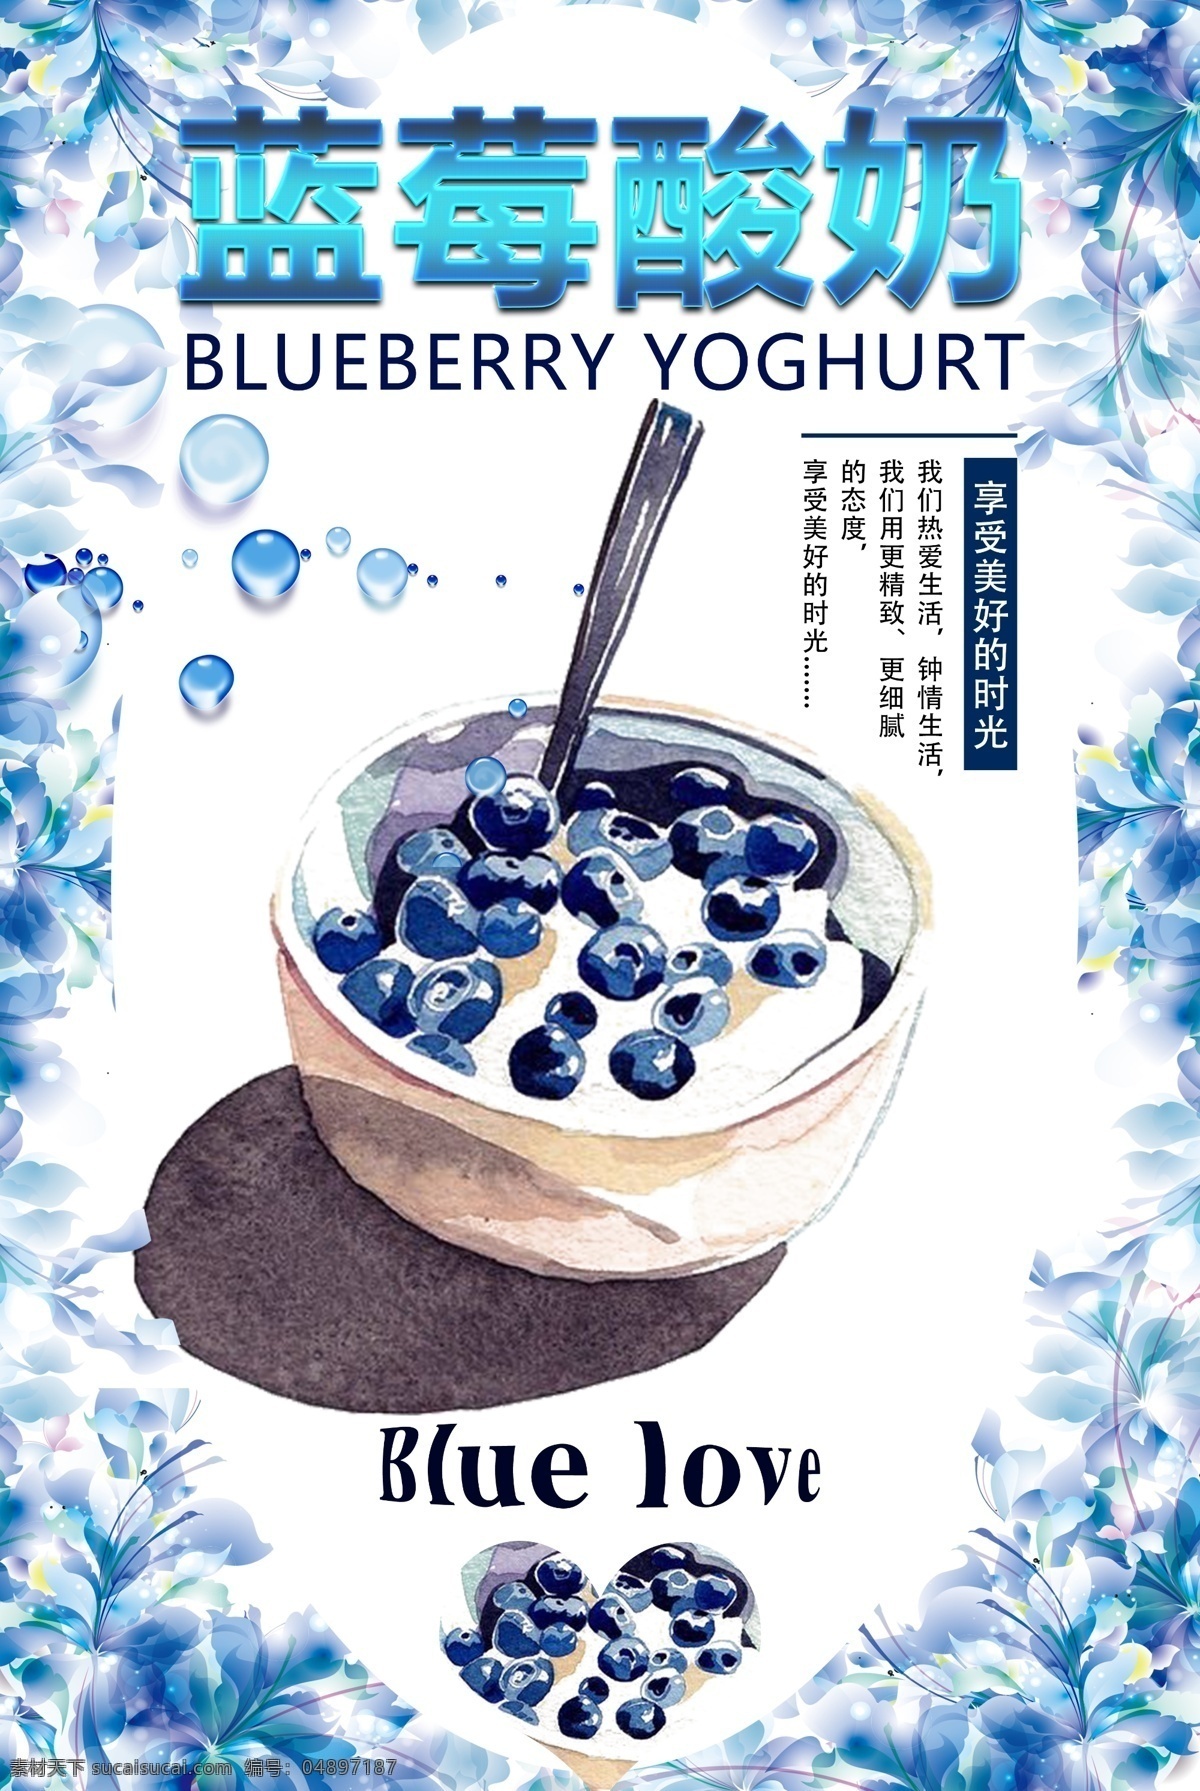 蓝莓酸奶字体 仙花 水珠 晶莹 蓝莓手绘 酸奶手绘 蓝莓酸奶手绘 展板 促销 好吃